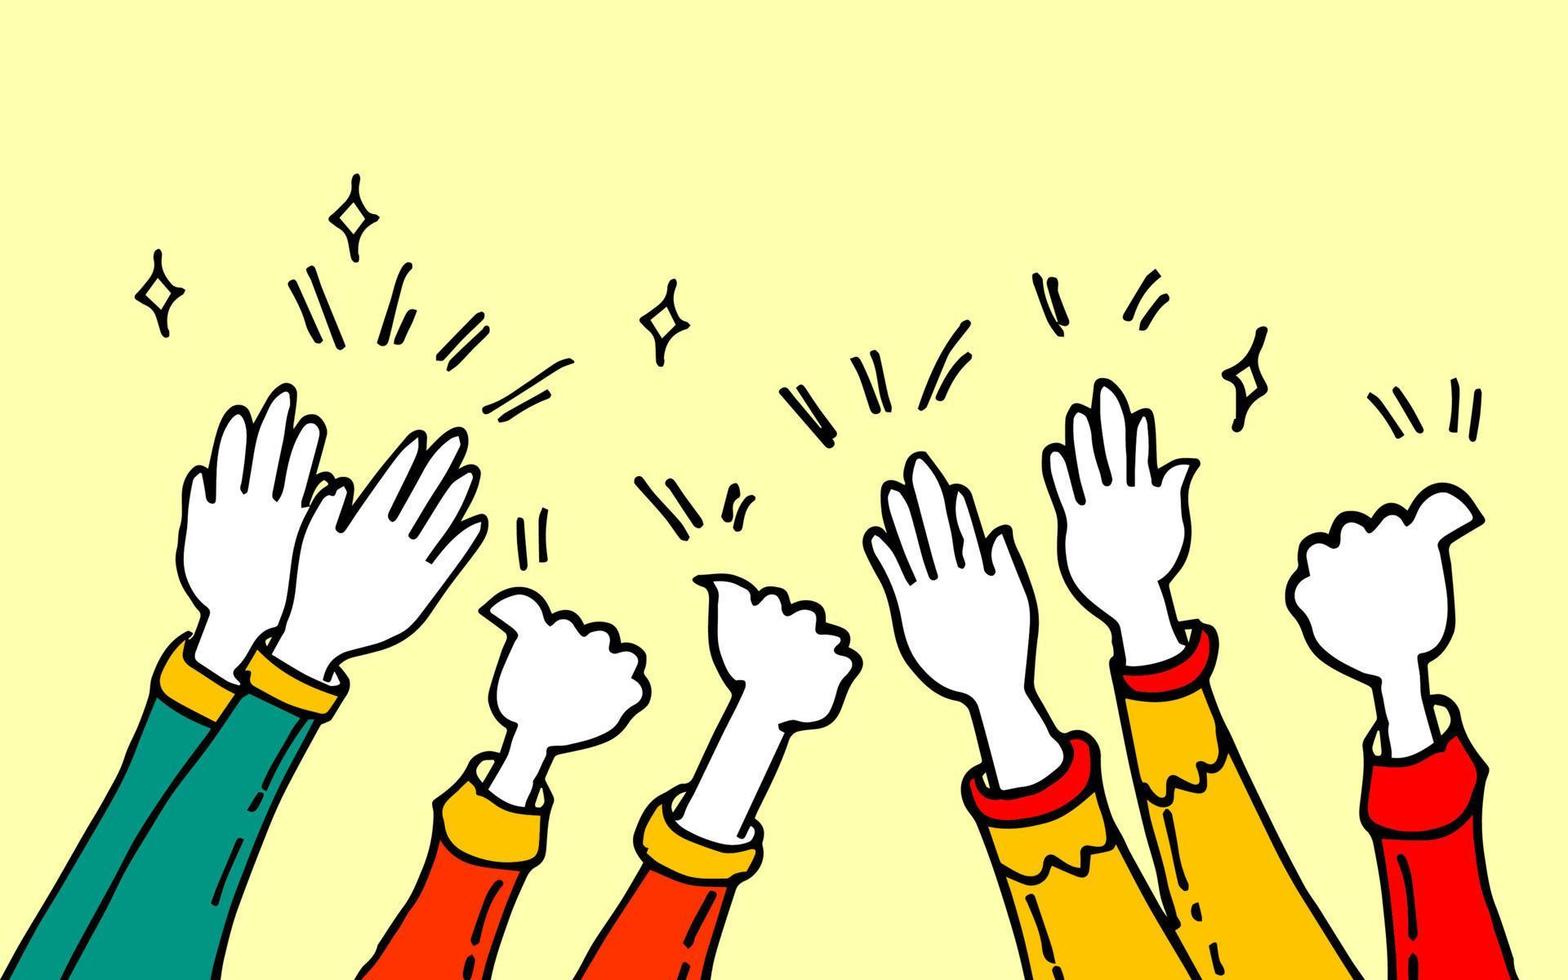 Cartoon-Stil von Händeklatschen. hände hoch, applaus und daumen hoch gesten. Hände Menschen für Konzeptdesign. Doodle-Vektor-Illustration vektor